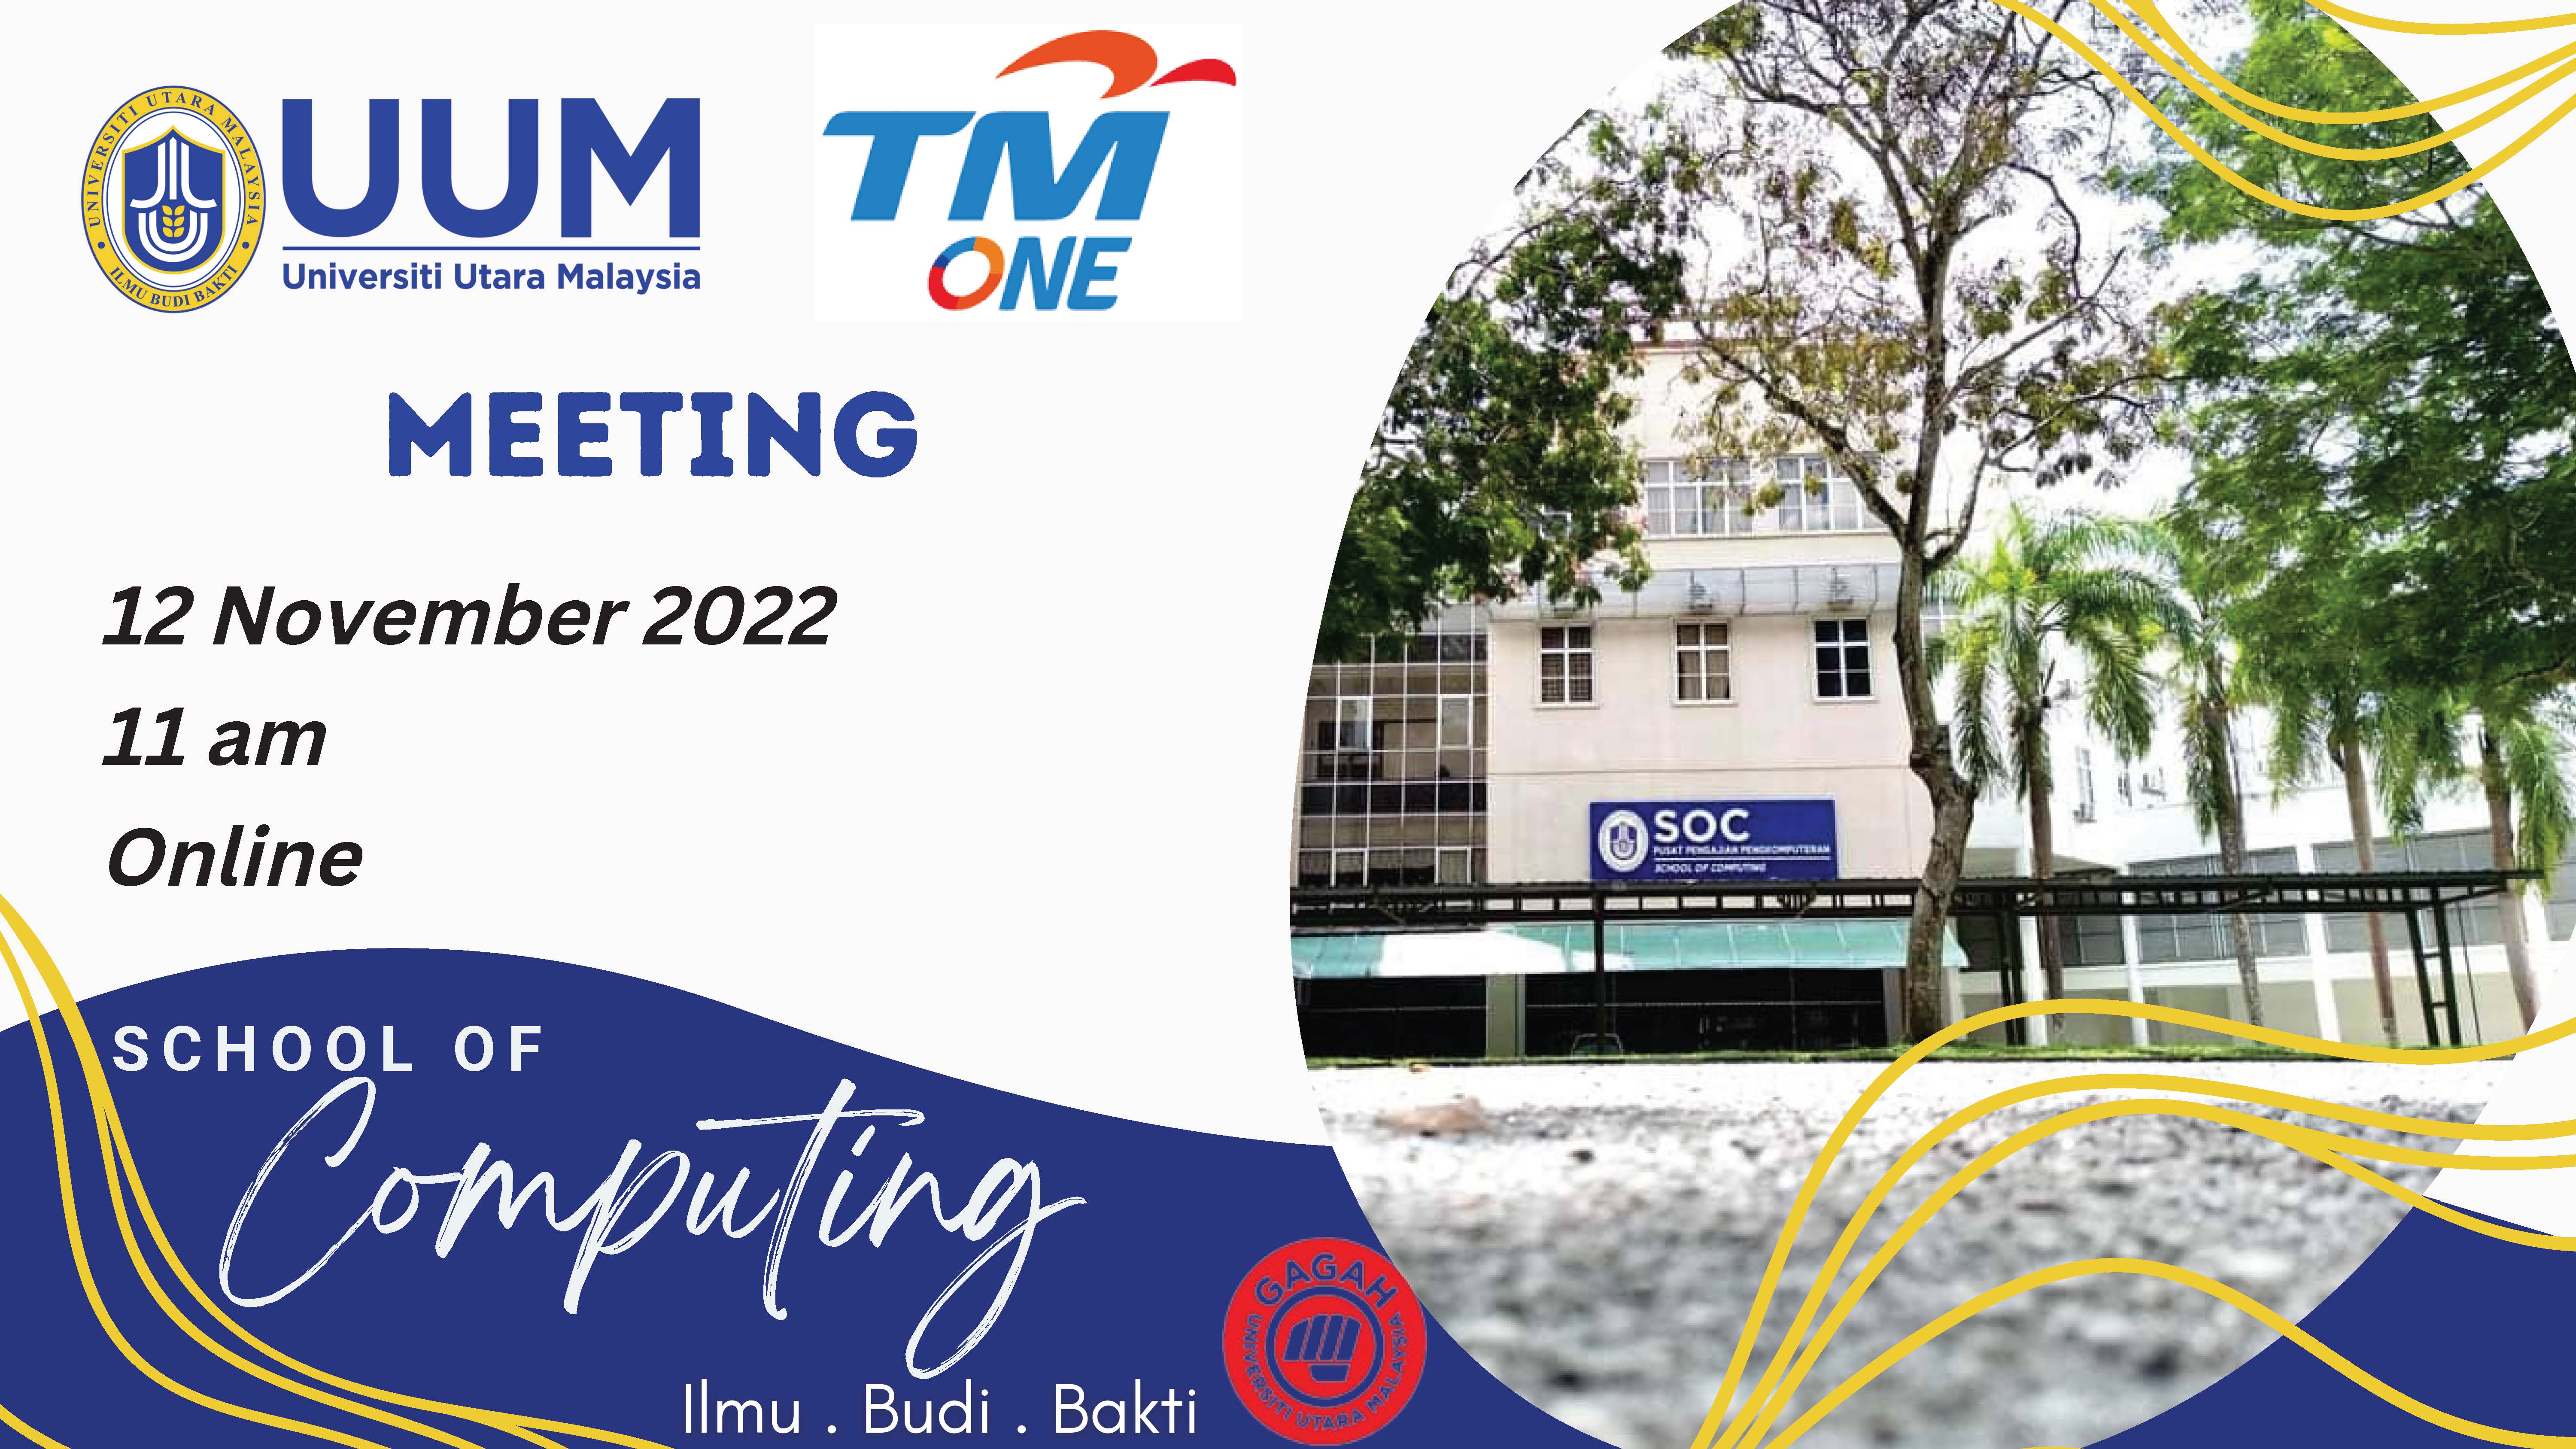 3 UUM TM One Meeting